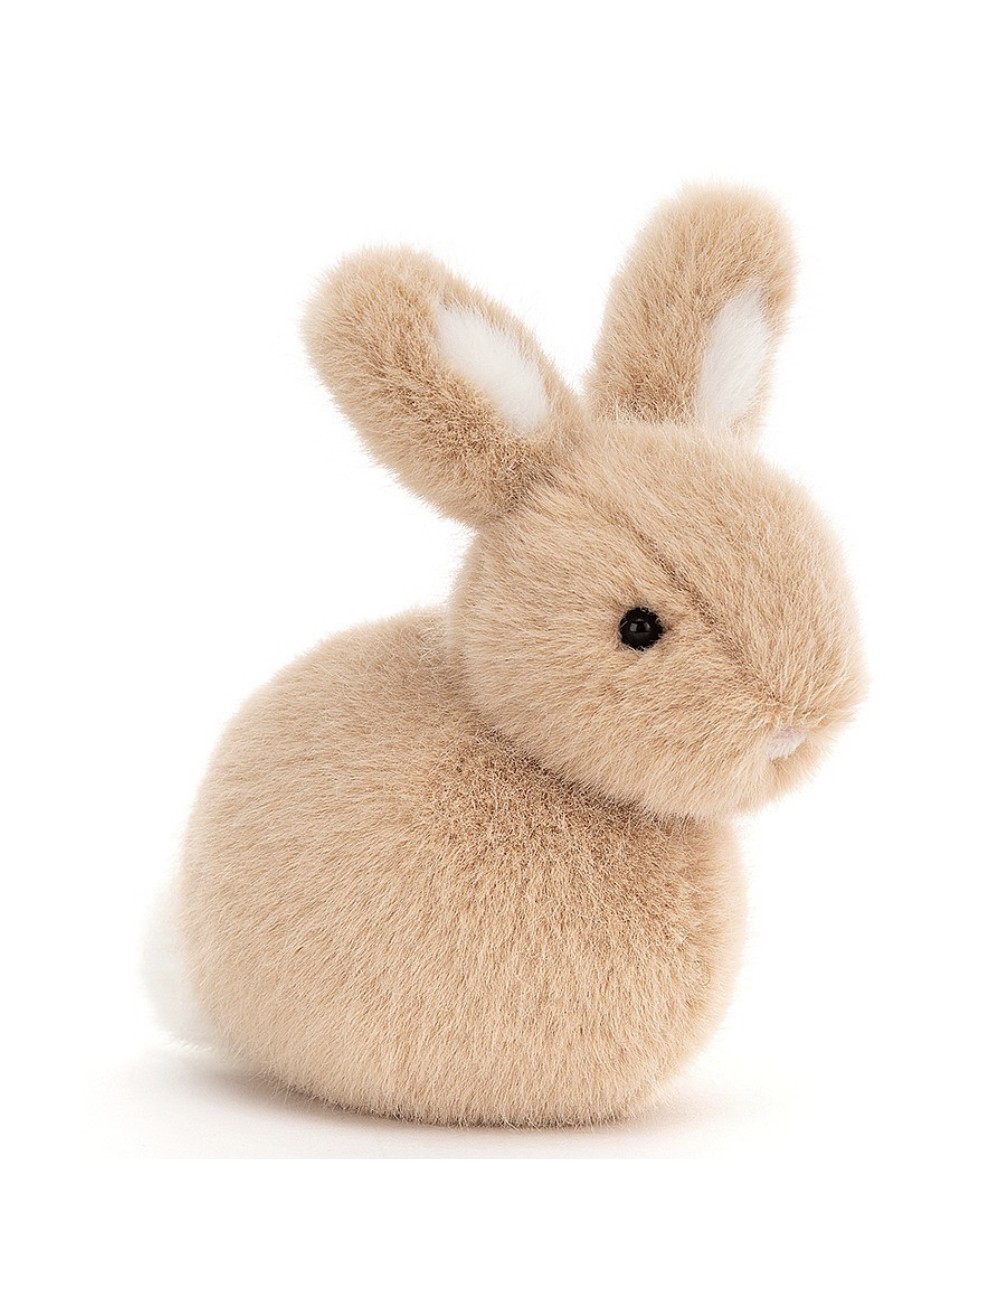 Petit lapin Pebblet Honey Bunny